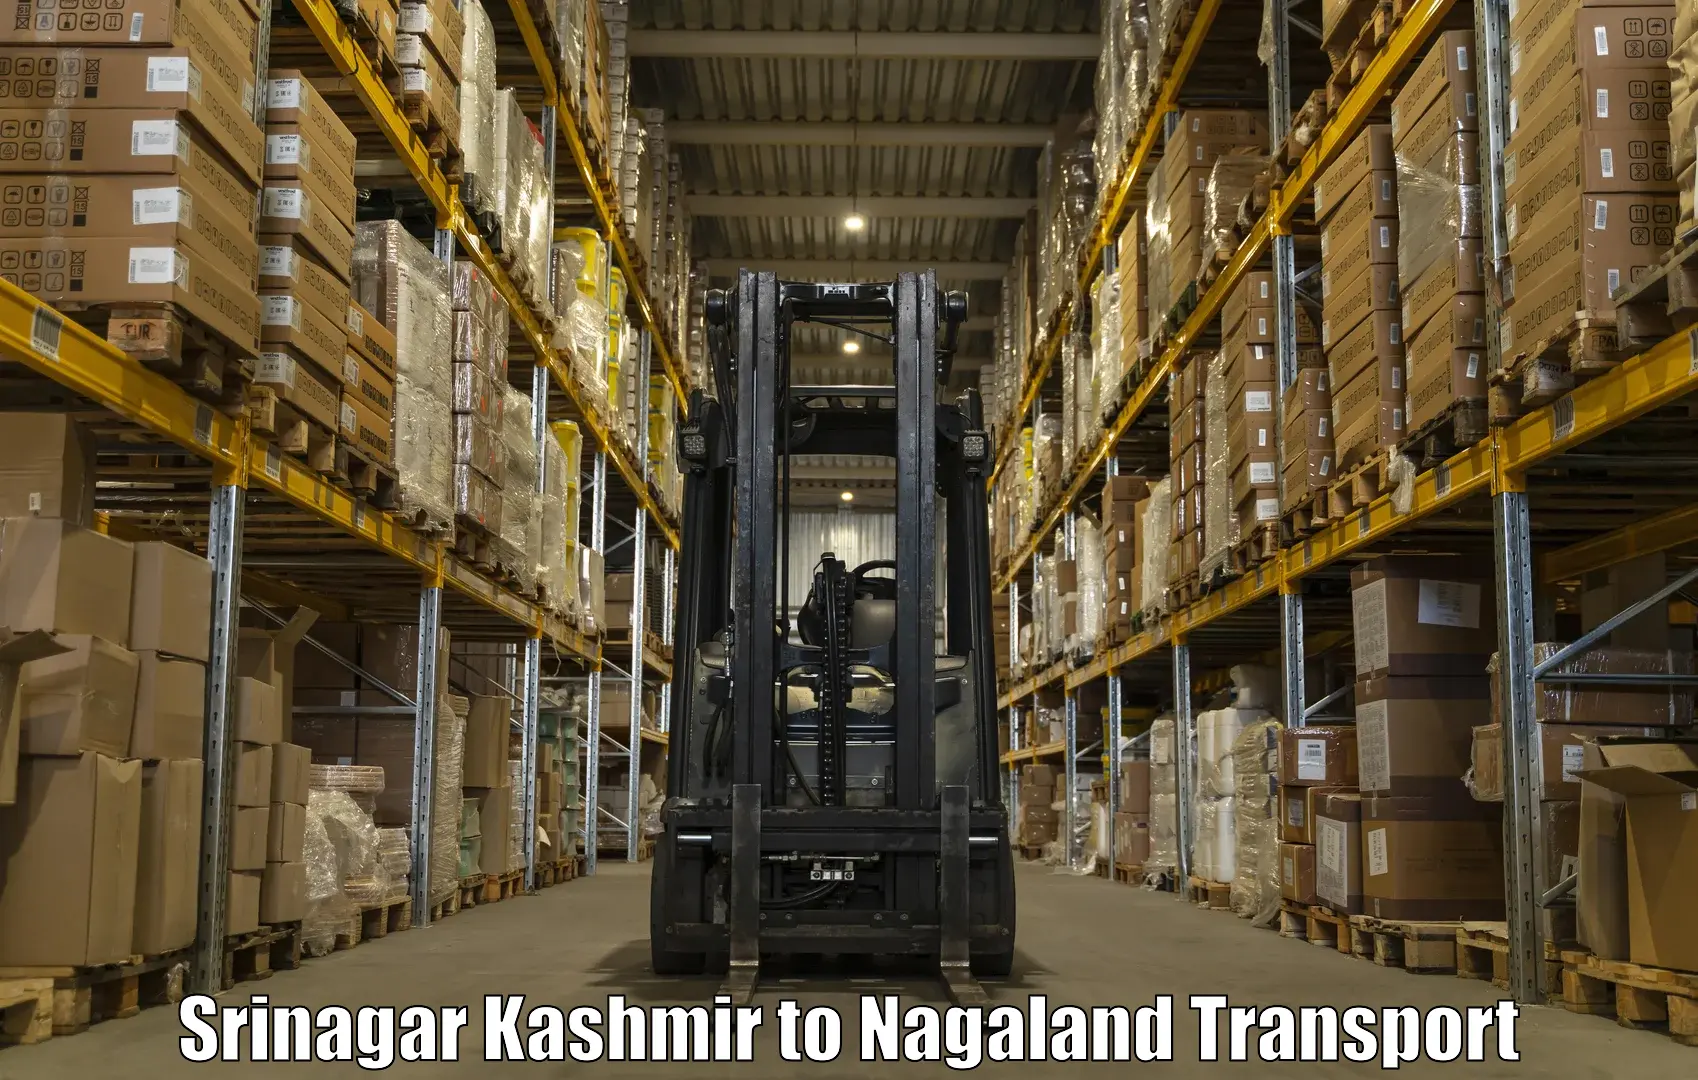 Bike shipping service Srinagar Kashmir to NIT Nagaland